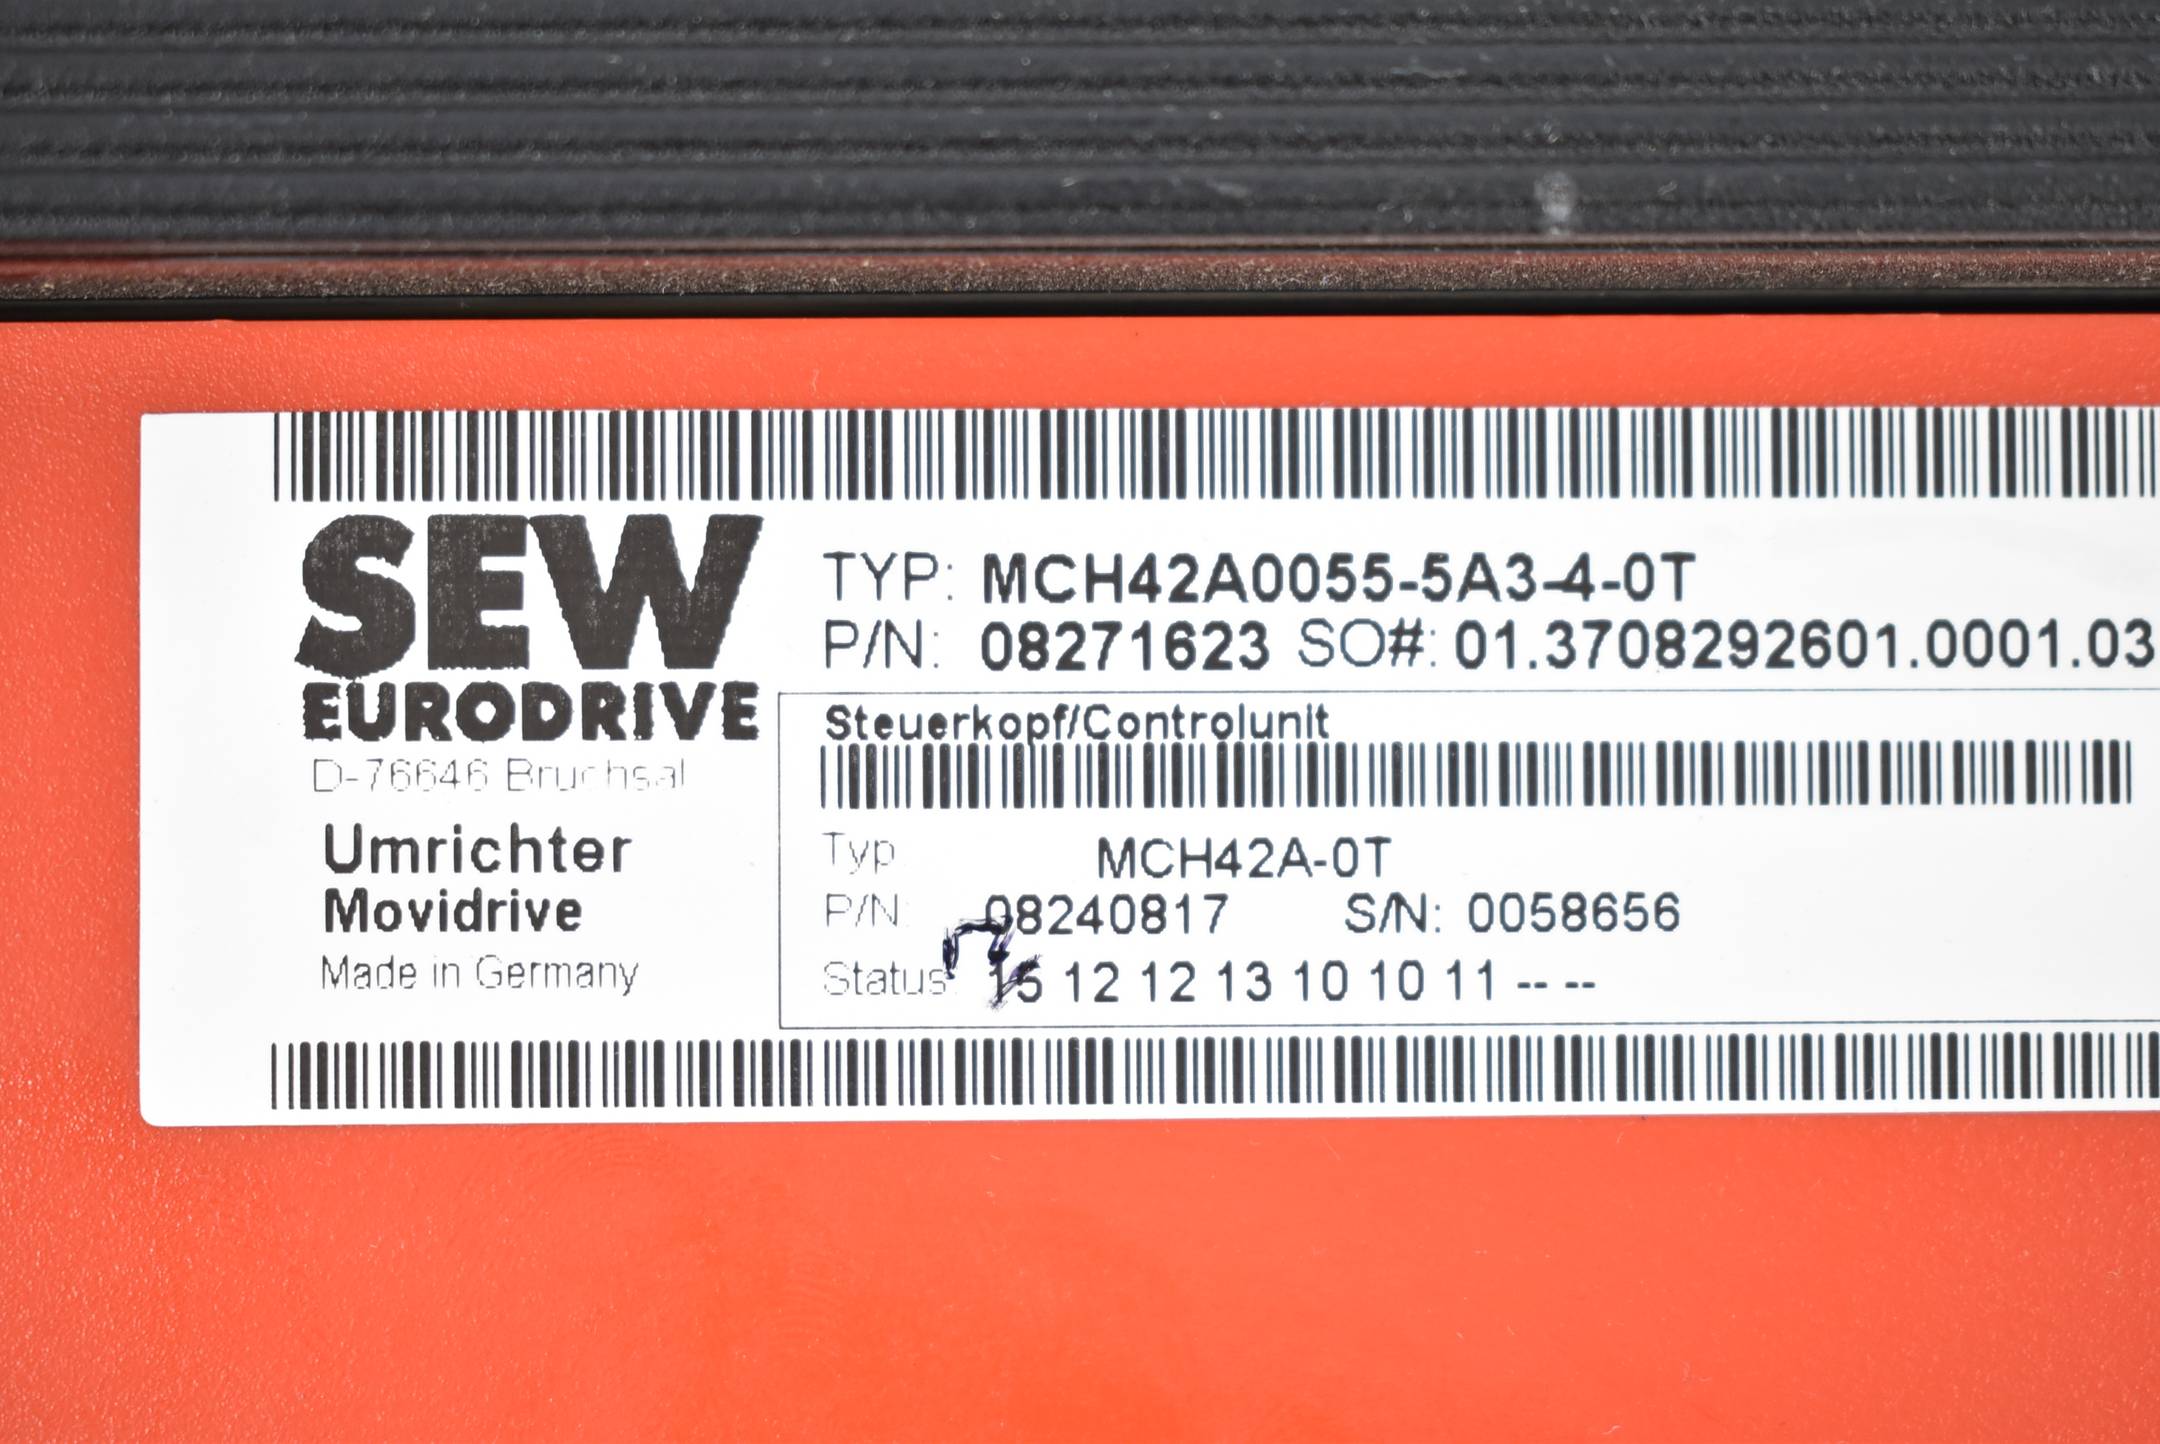 SEW Eurodrive Movidrive Umrichter MCH42A0055-5A3-4-0T + MDX60A0055-5A3-4-00